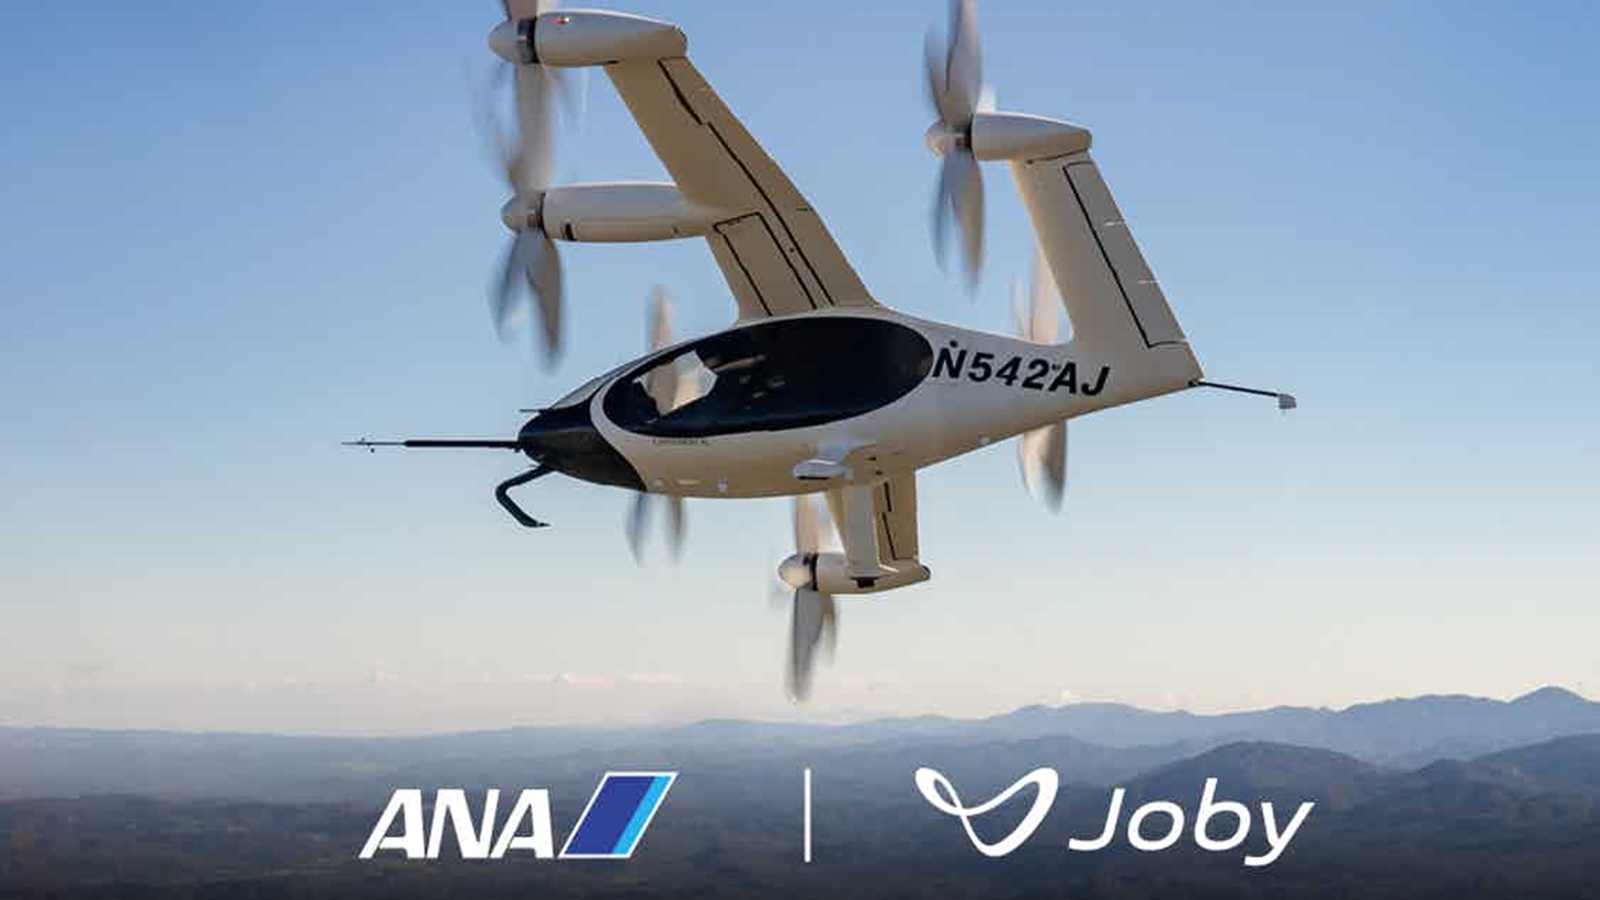 Ana 空飛ぶクルマ でトヨタ出資米社と提携 地上交通と連携 日経クロステック Xtech